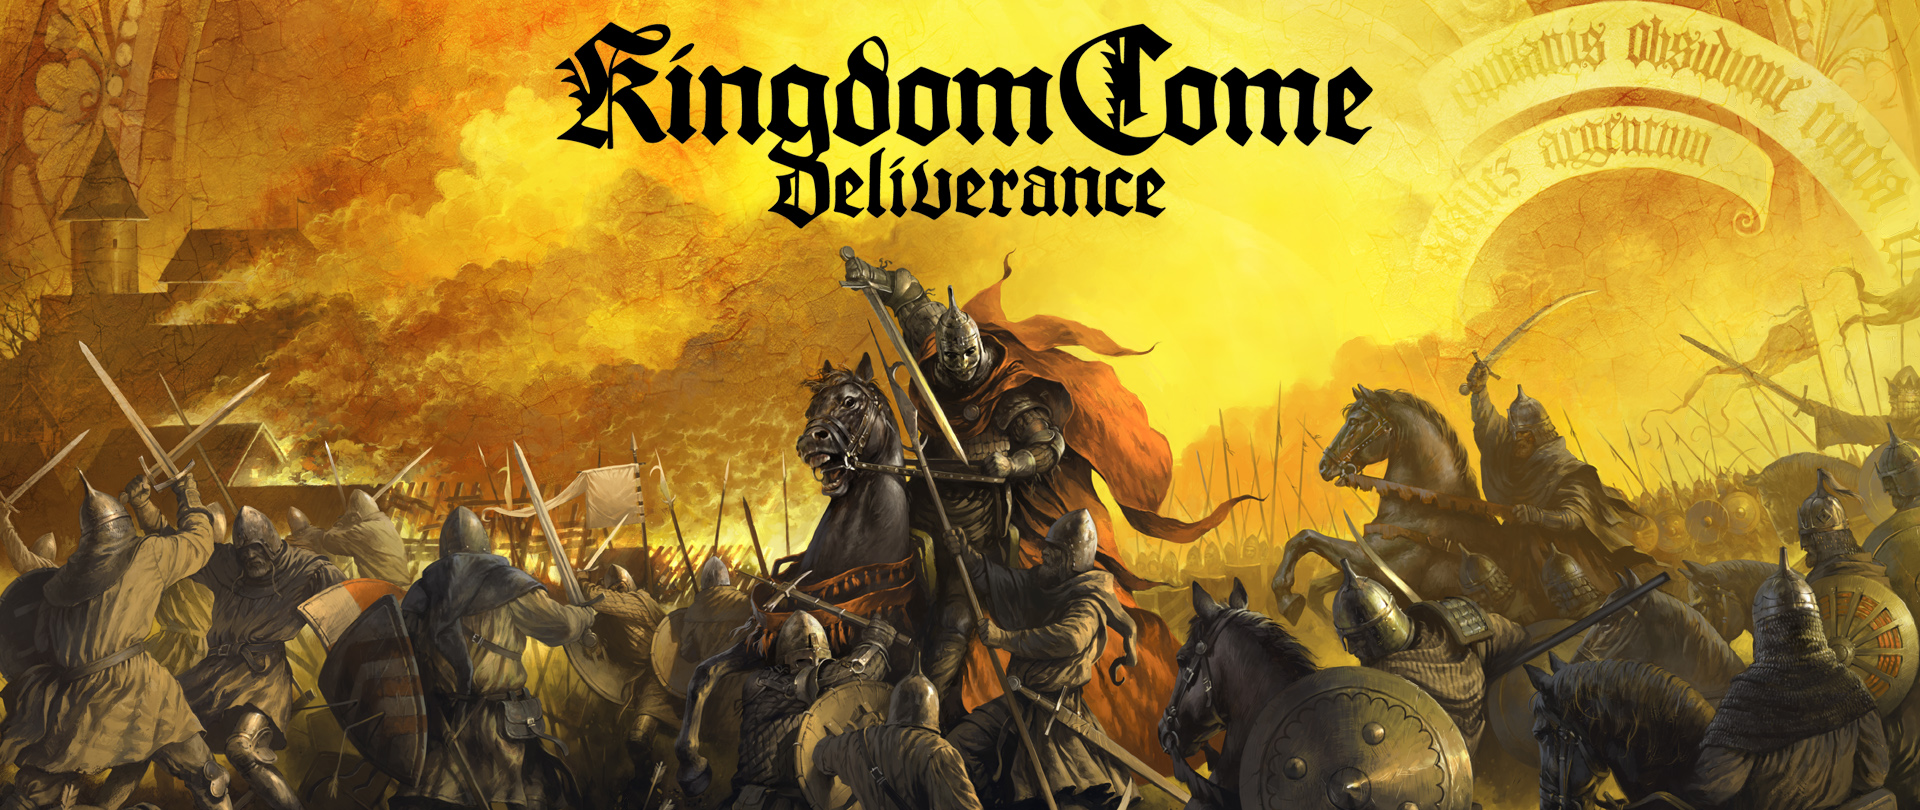 Ya disponible Kingdom Come: Deliverance Royal Edition | Tráiler de lanzamiento